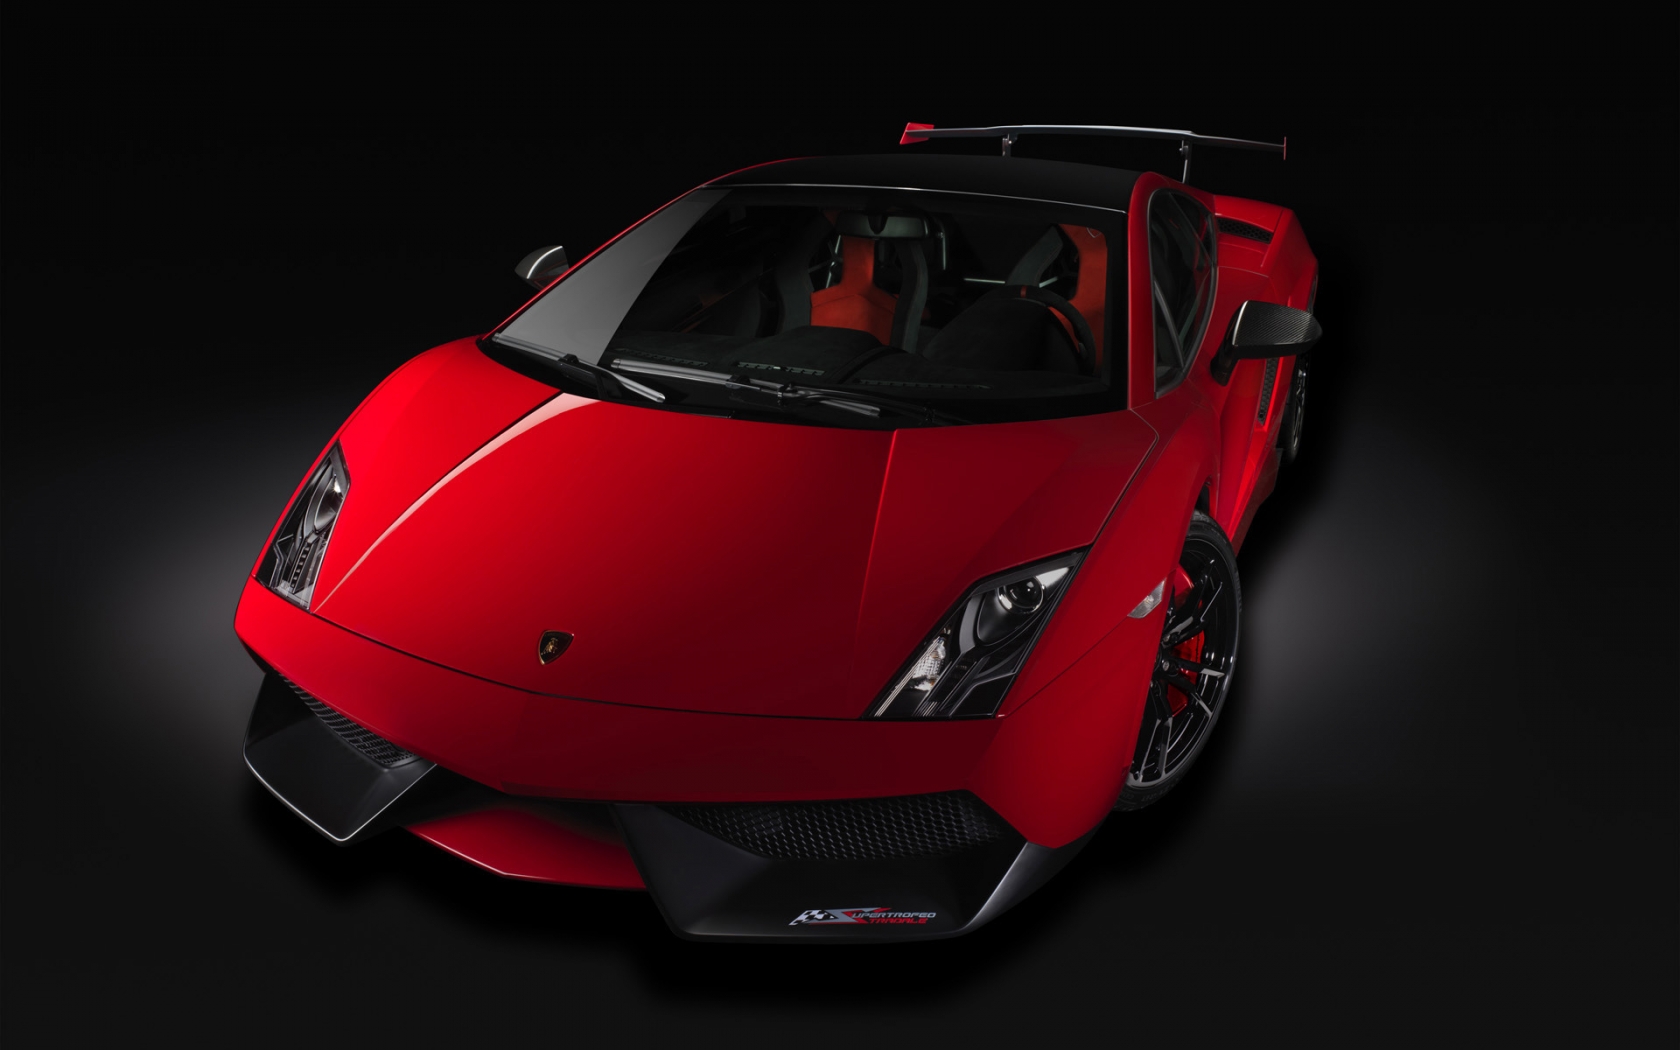 Lamborghini Gallardo Stradale 2012 for 1680 x 1050 widescreen resolution